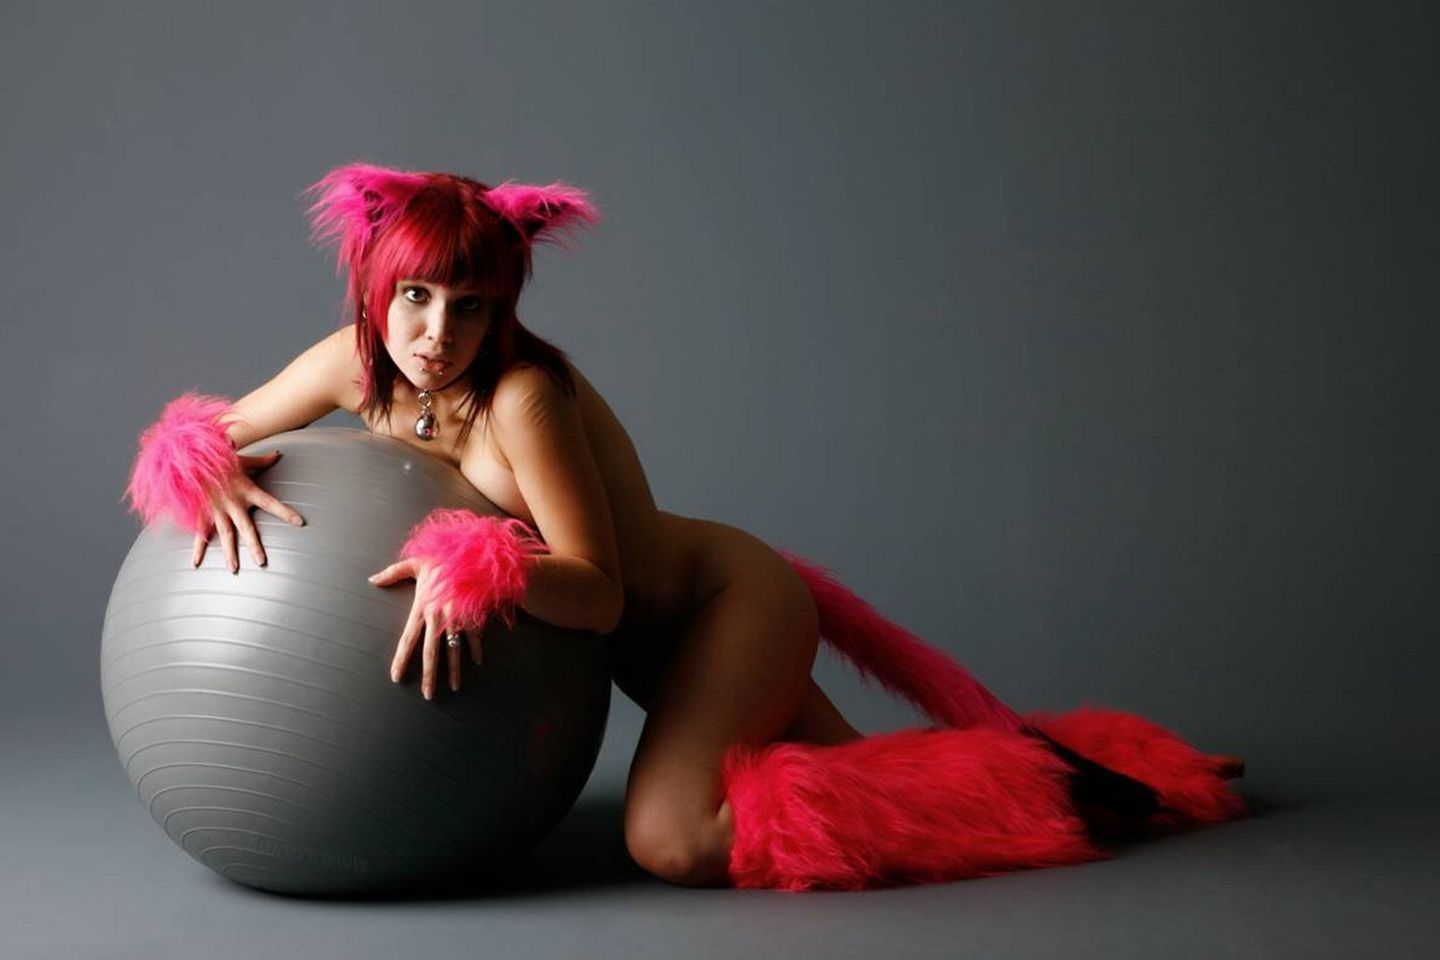 голая девушка в секс наряде кошки.  картинки для заставка рабочего стола